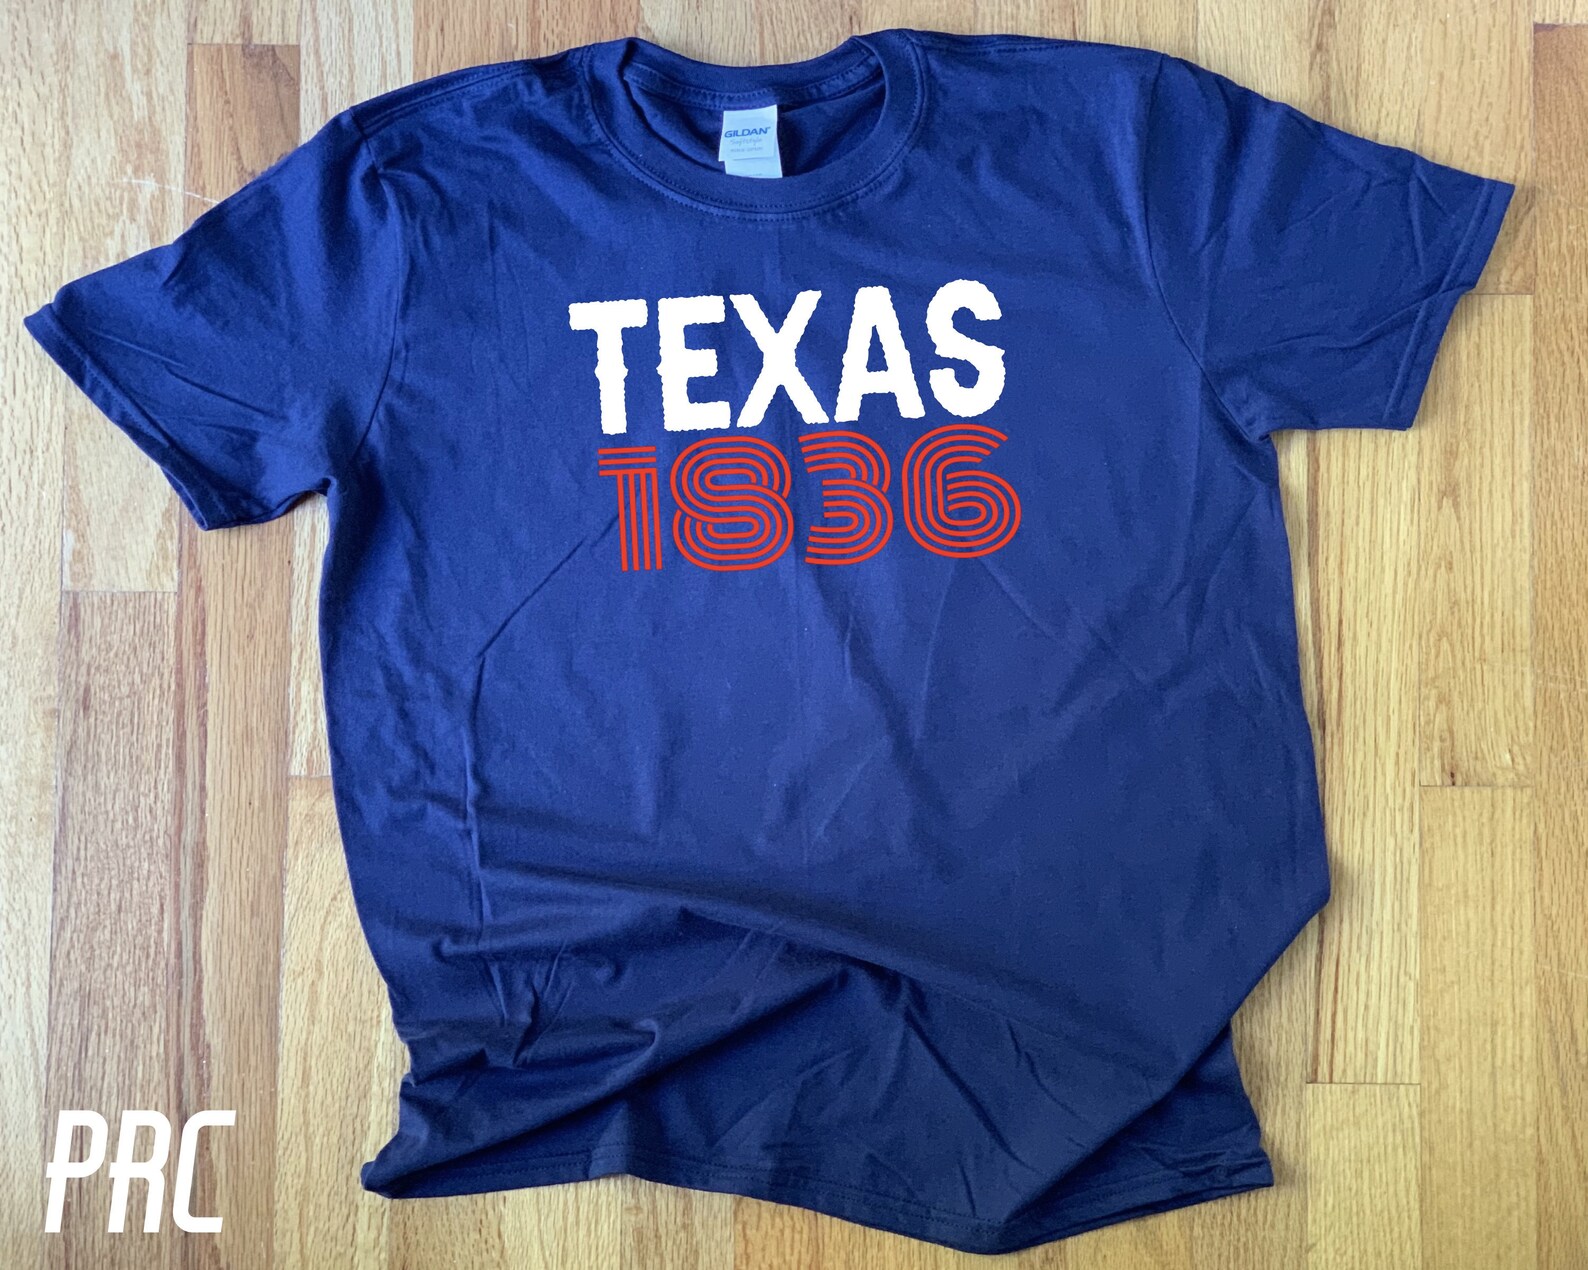 Texas 1836 Shirt Texas Shirt Republic of Texas Tee 1836 - Etsy